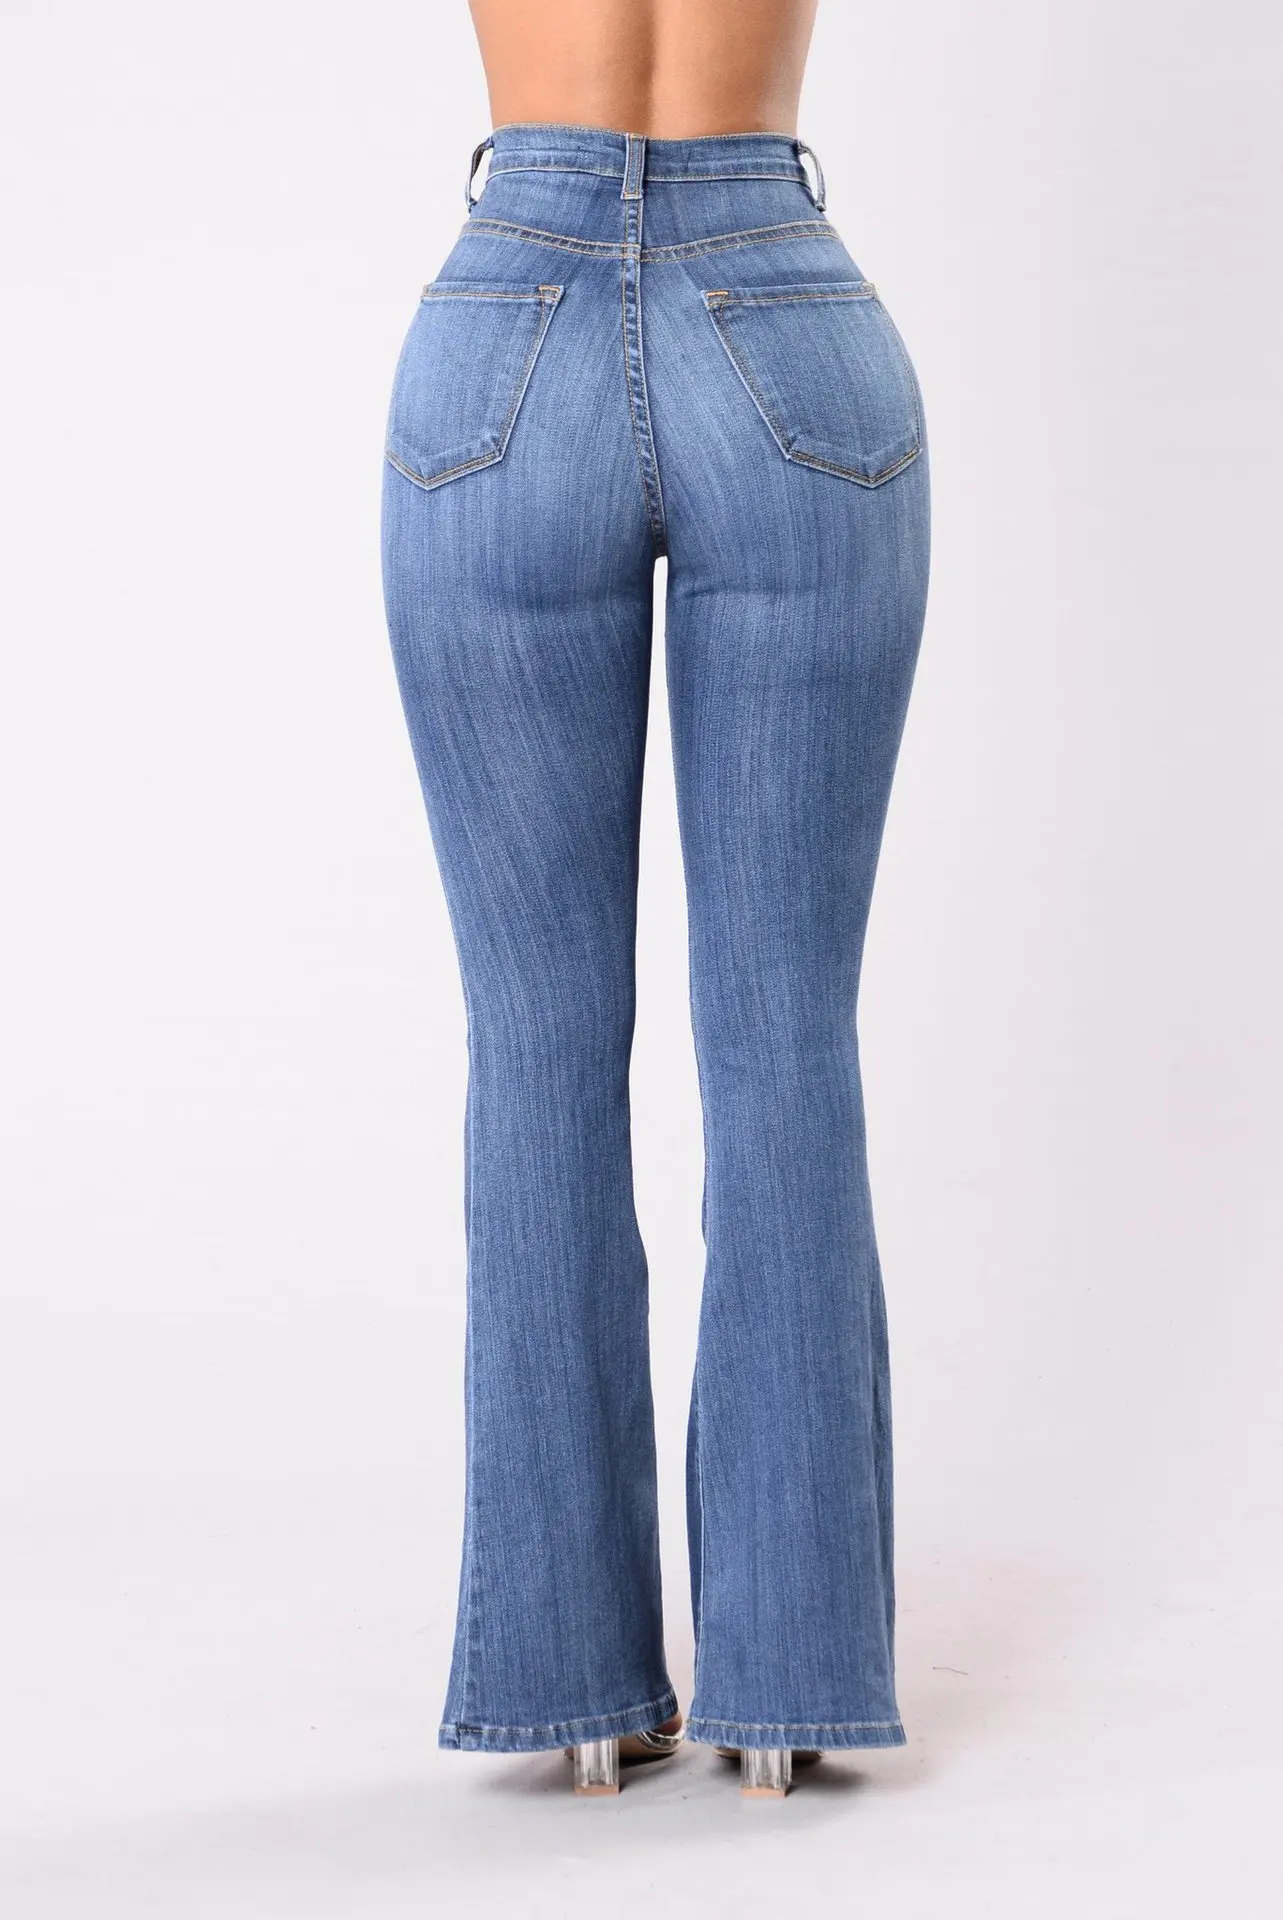 TUHAO осень зима женские расклешенные брюки повседневные джинсы для женщин Высокая талия женские джинсы для офиса леди рабочая одежда SH01